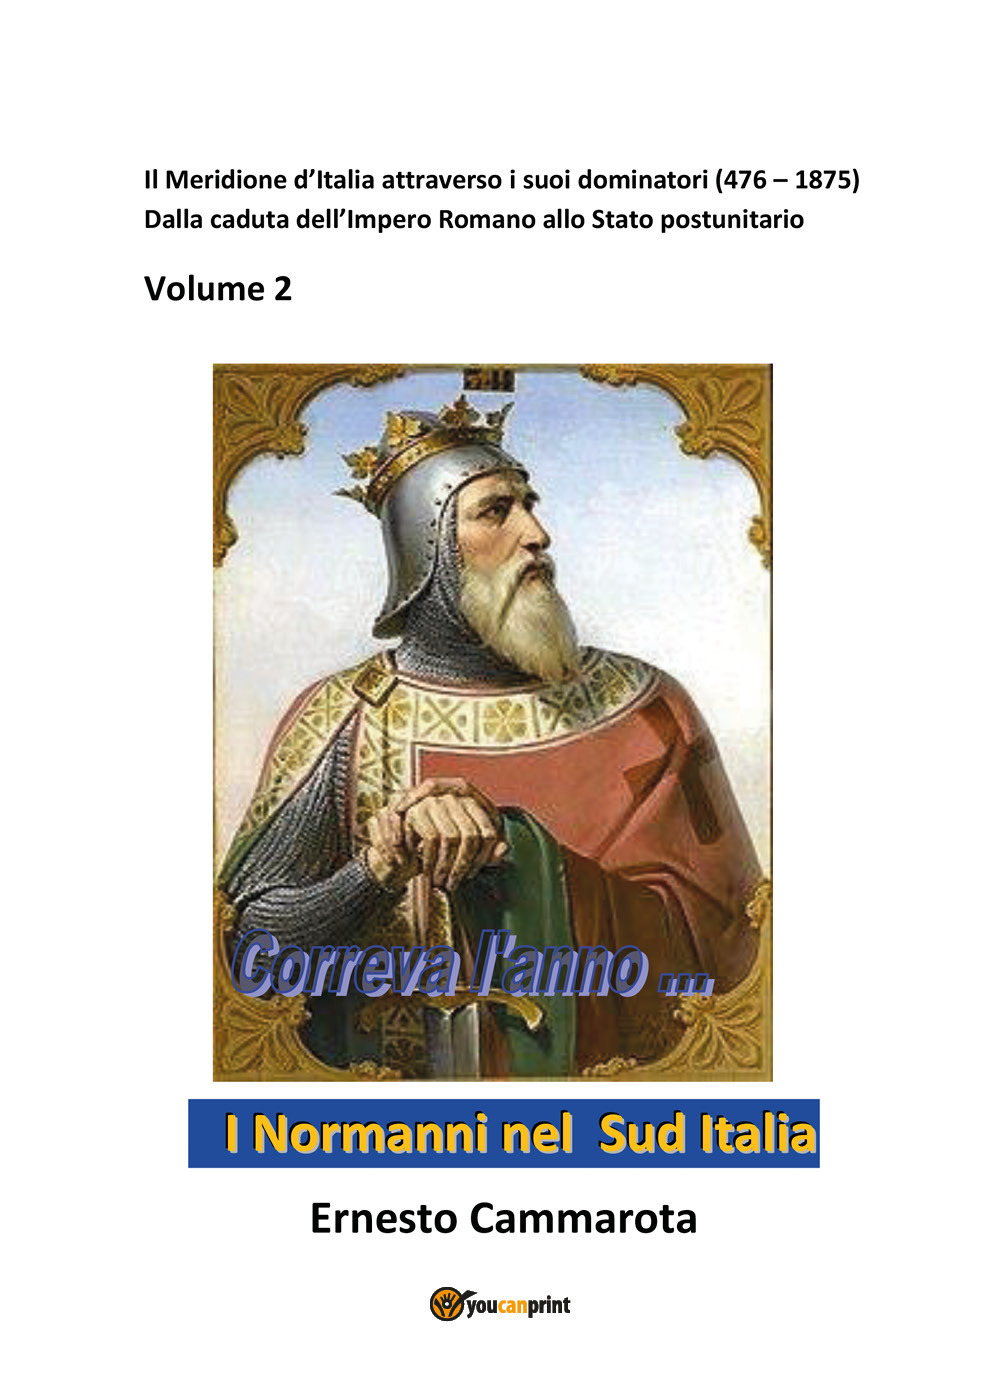 I Normanni nel sud Italia. Vol. 2: Il Meridione d'Italia attraverso i suoi dominatori (476-1875). Dalla caduta dell'Impero romano allo Stato postunitario